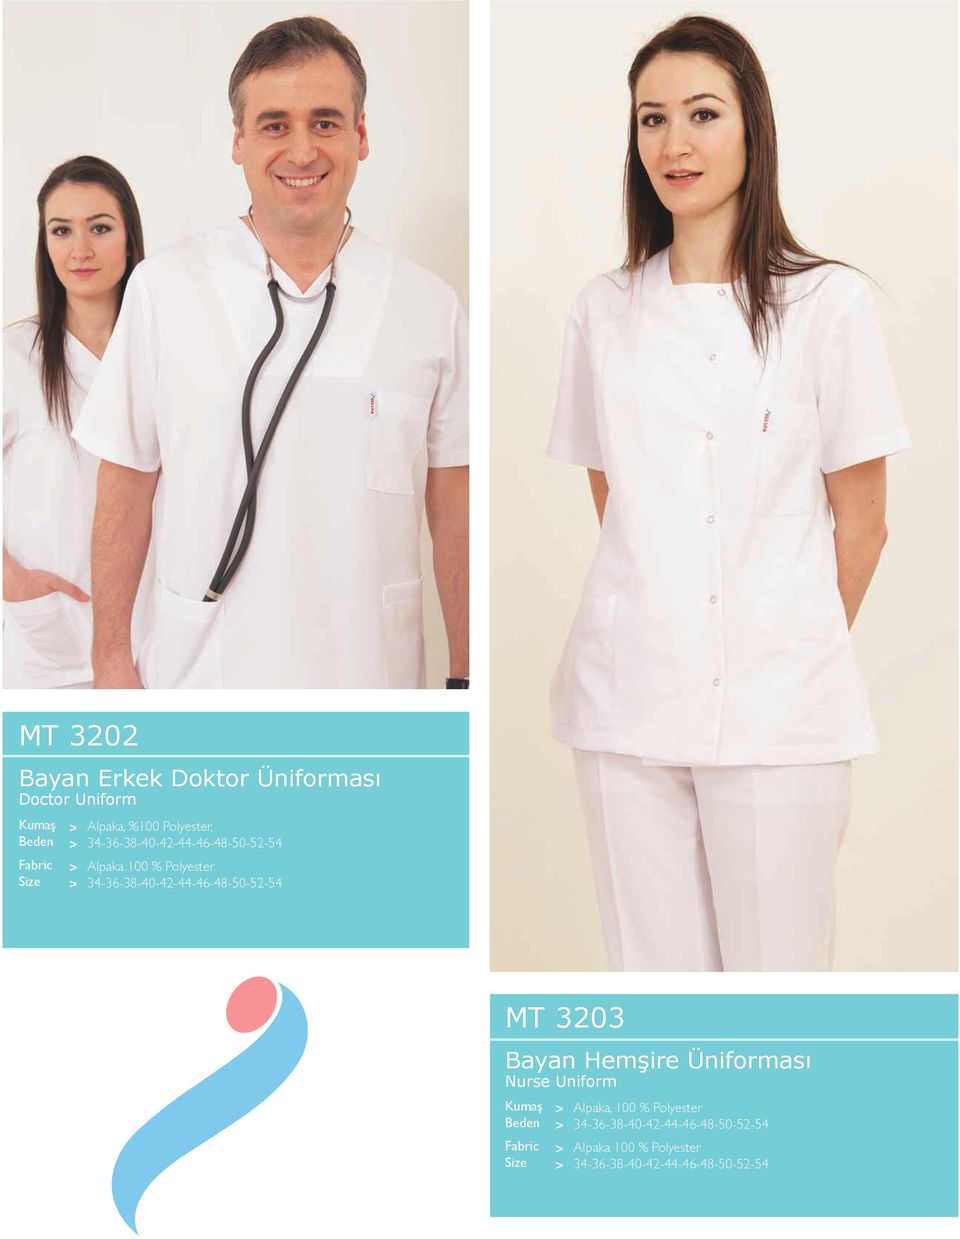 34-36-38-40-42-44-46-48-50-52-54 MT 3203 Bayan Hemşire Üniforması Nurse Uniform Beden